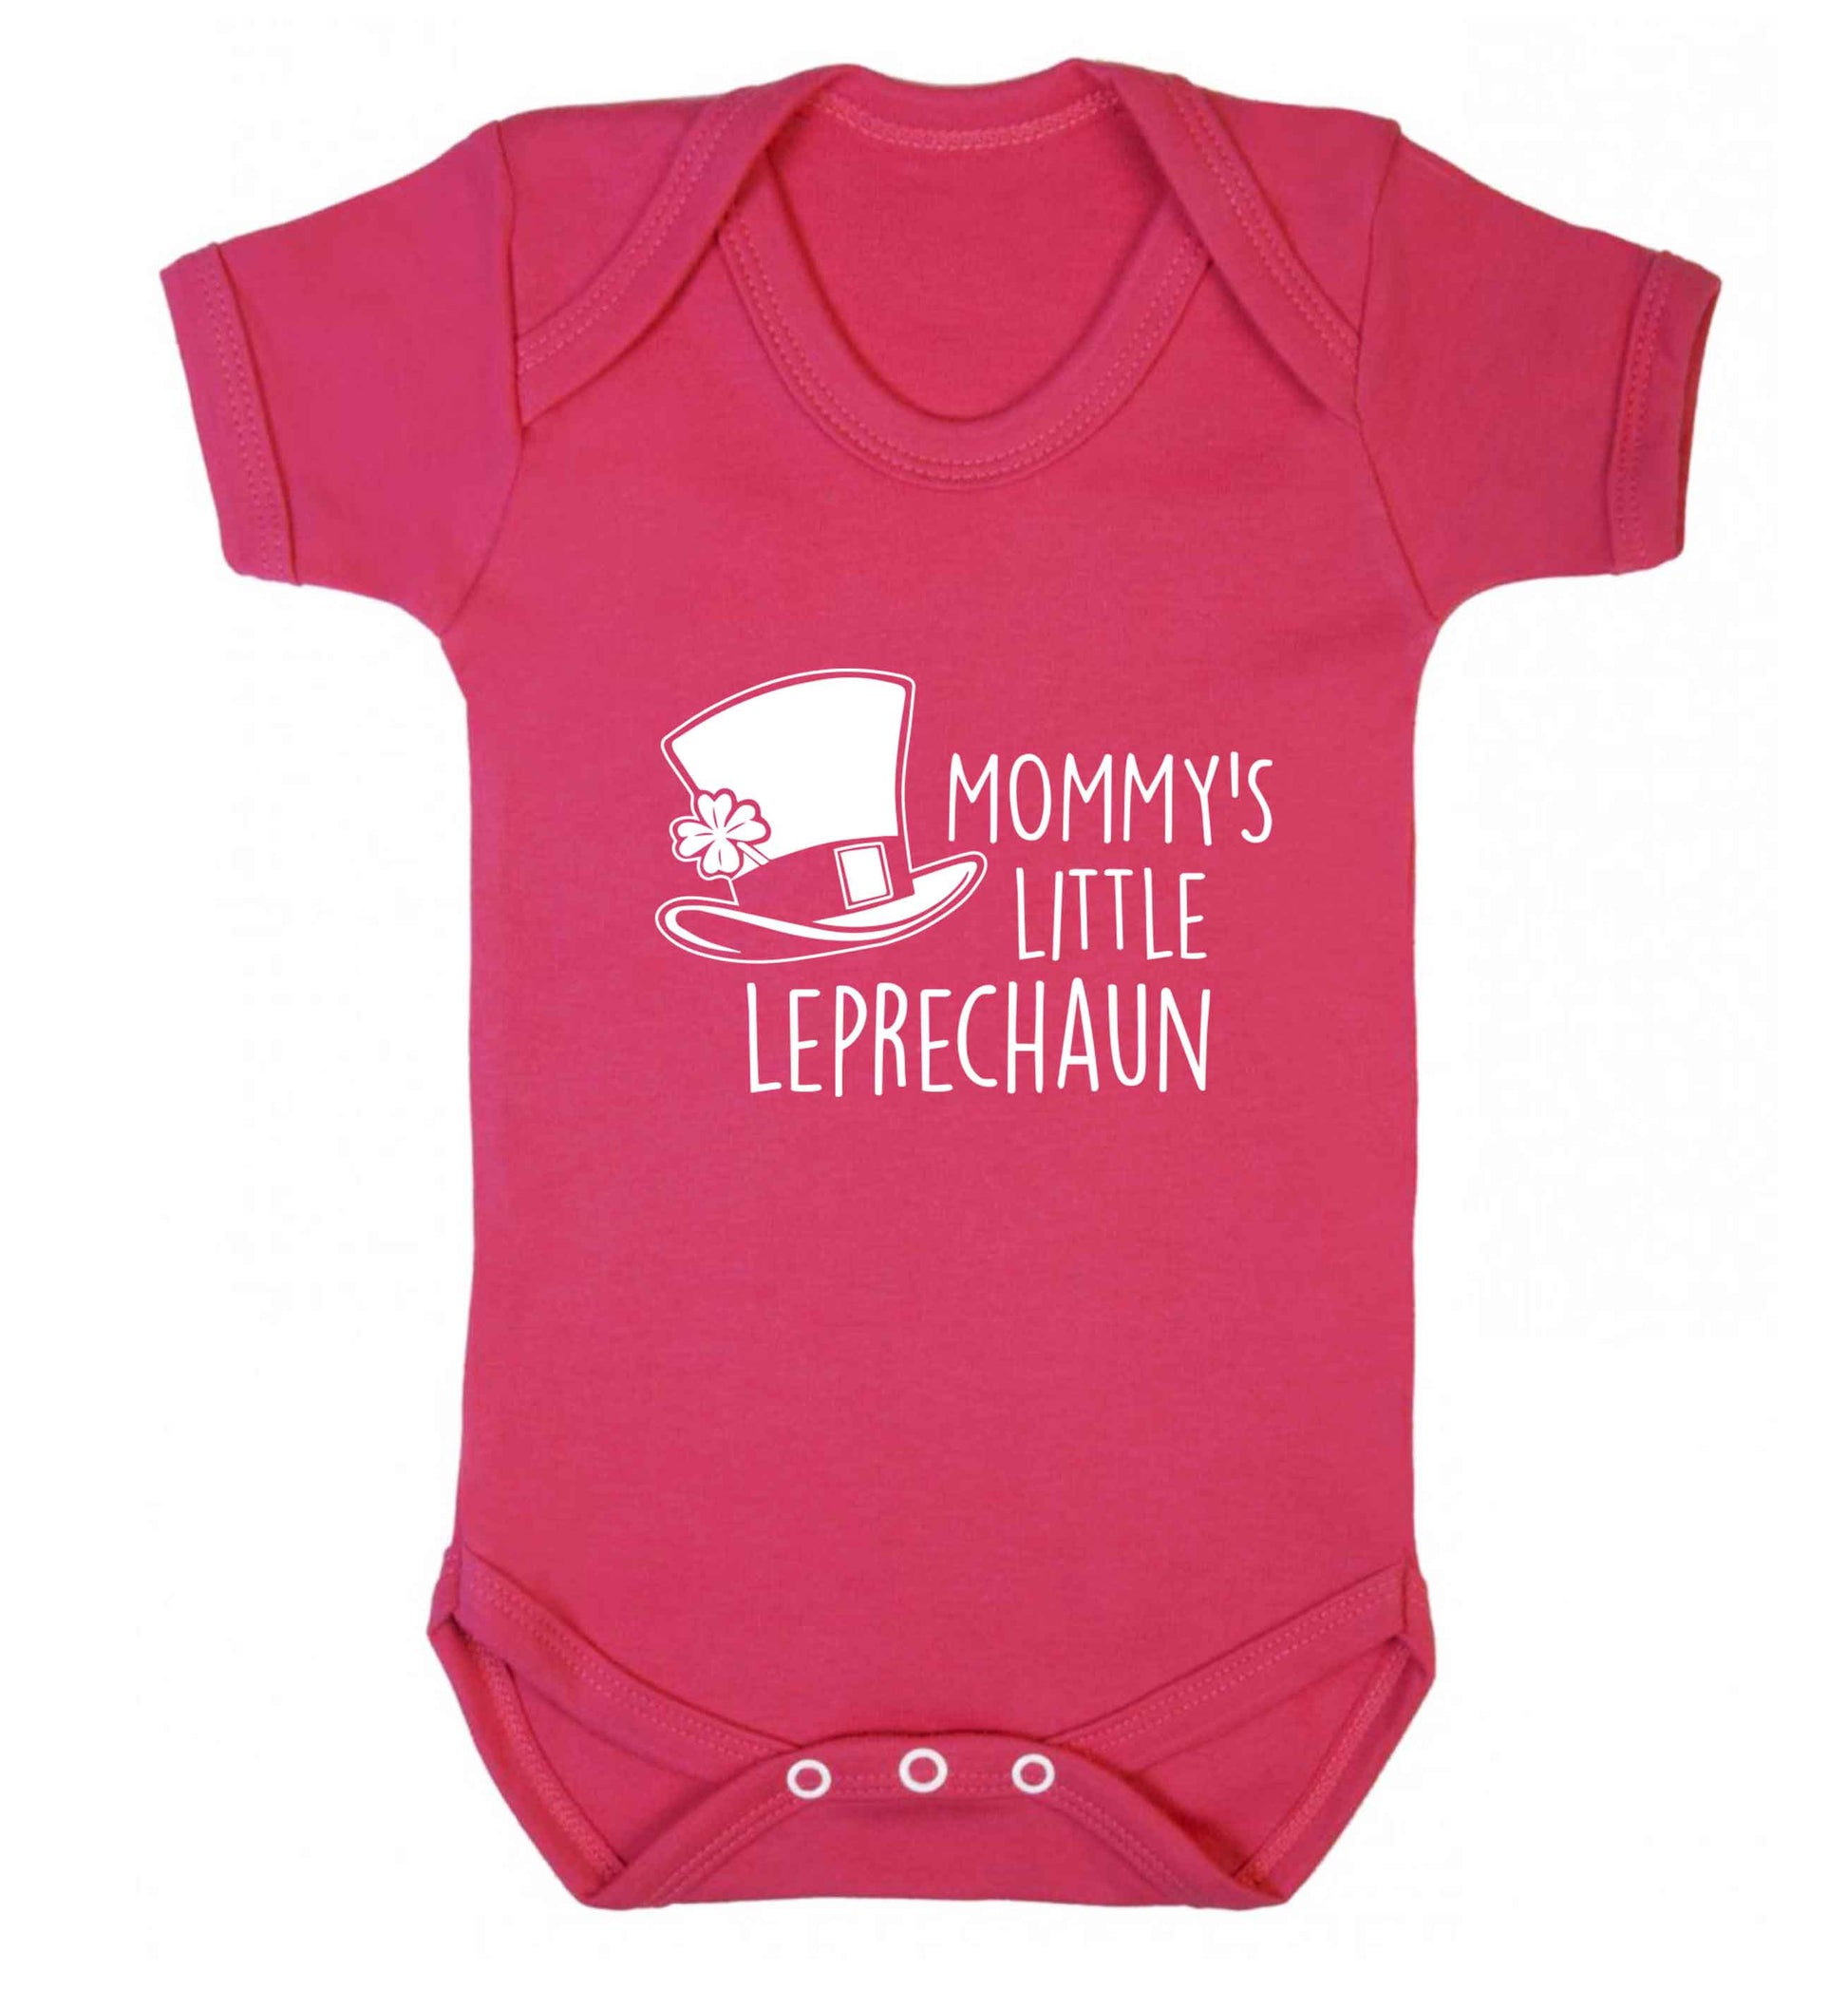 Mommy's little leprechaun baby vest dark pink 18-24 months